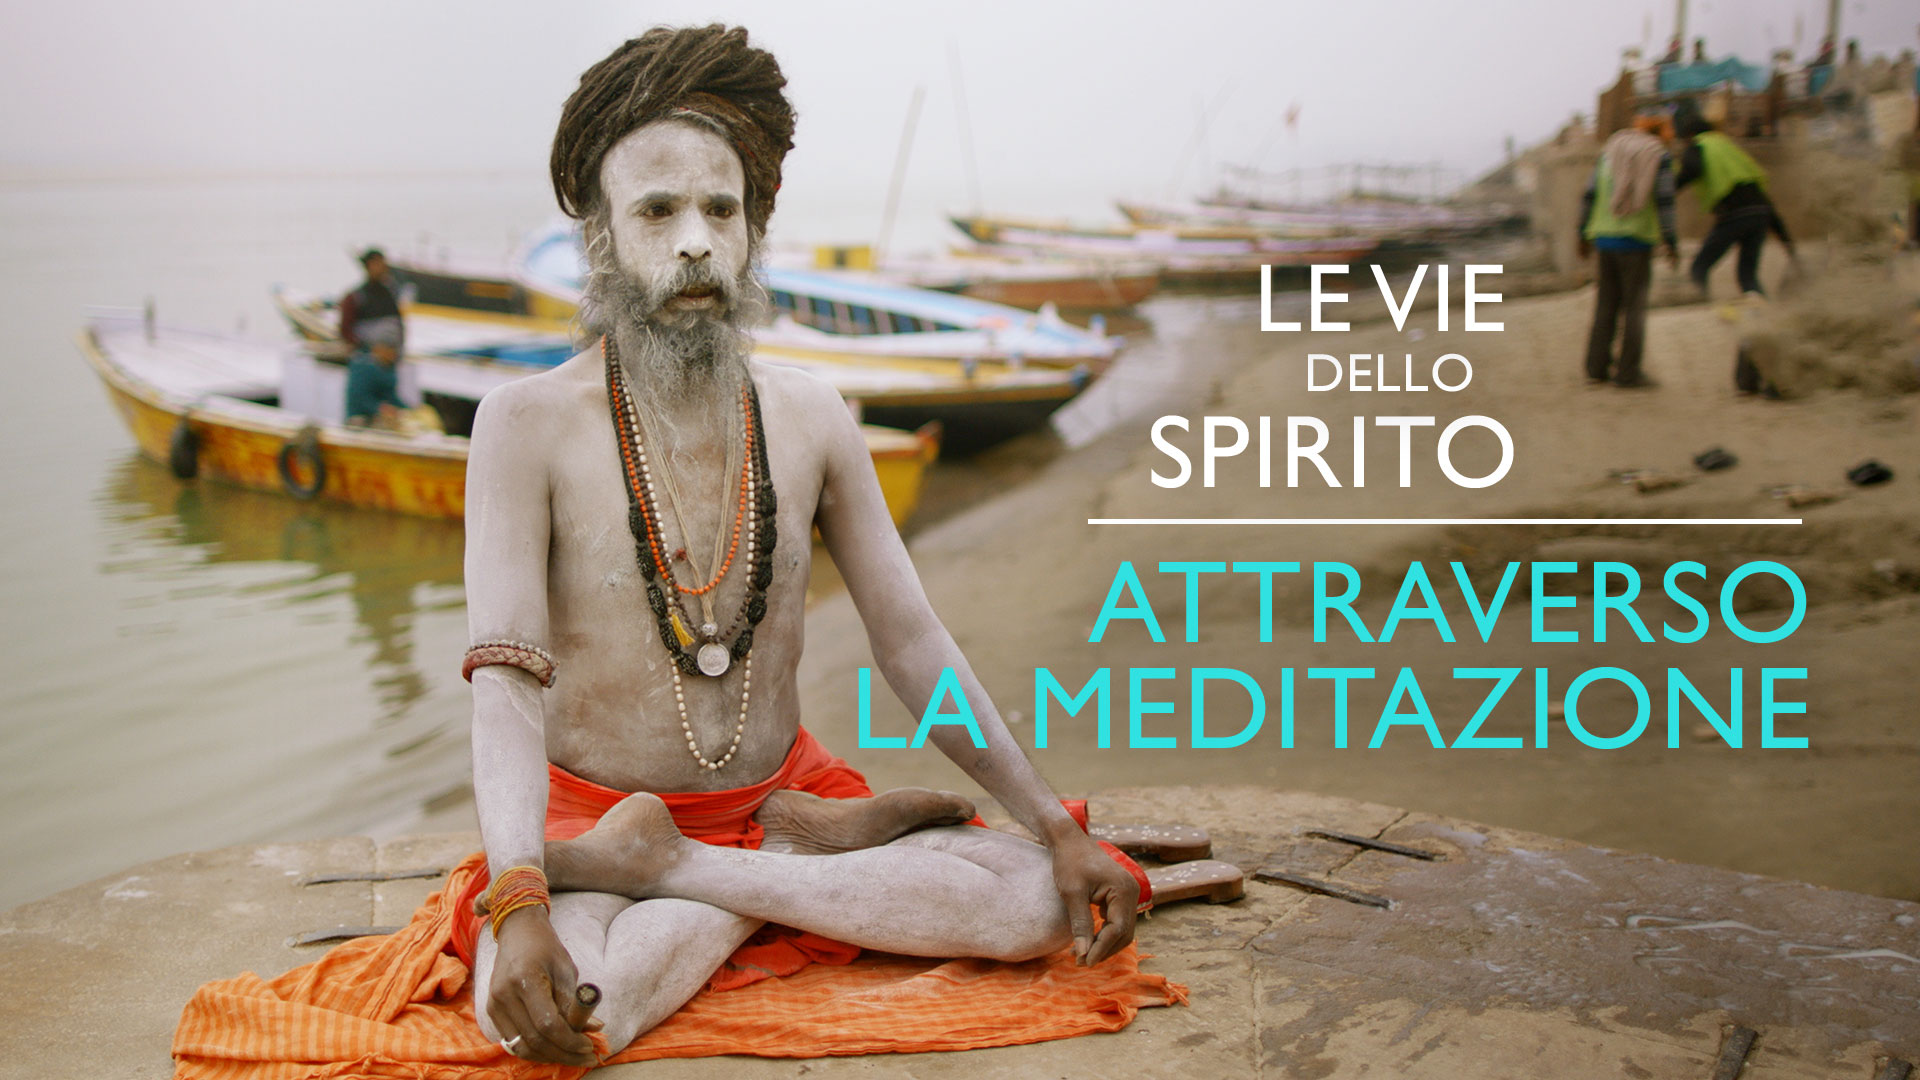 Poster Le vie dello spirito - Attraverso la meditazione